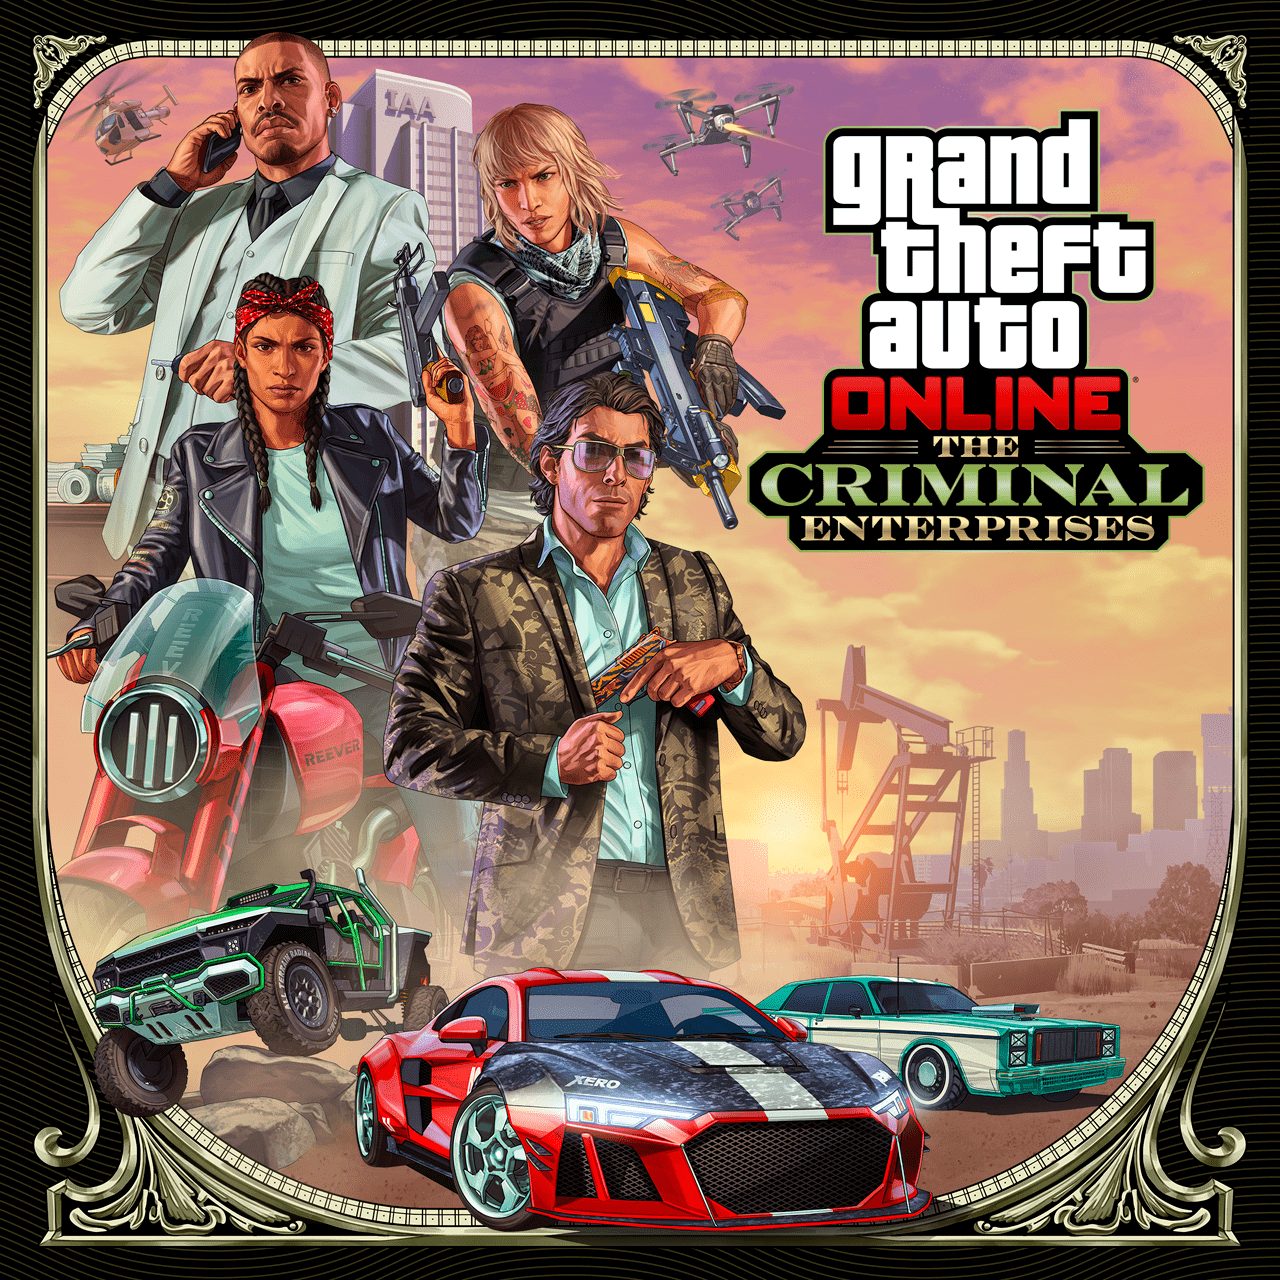 Grand Theft Auto Online: The Criminal Enterprises official artwork